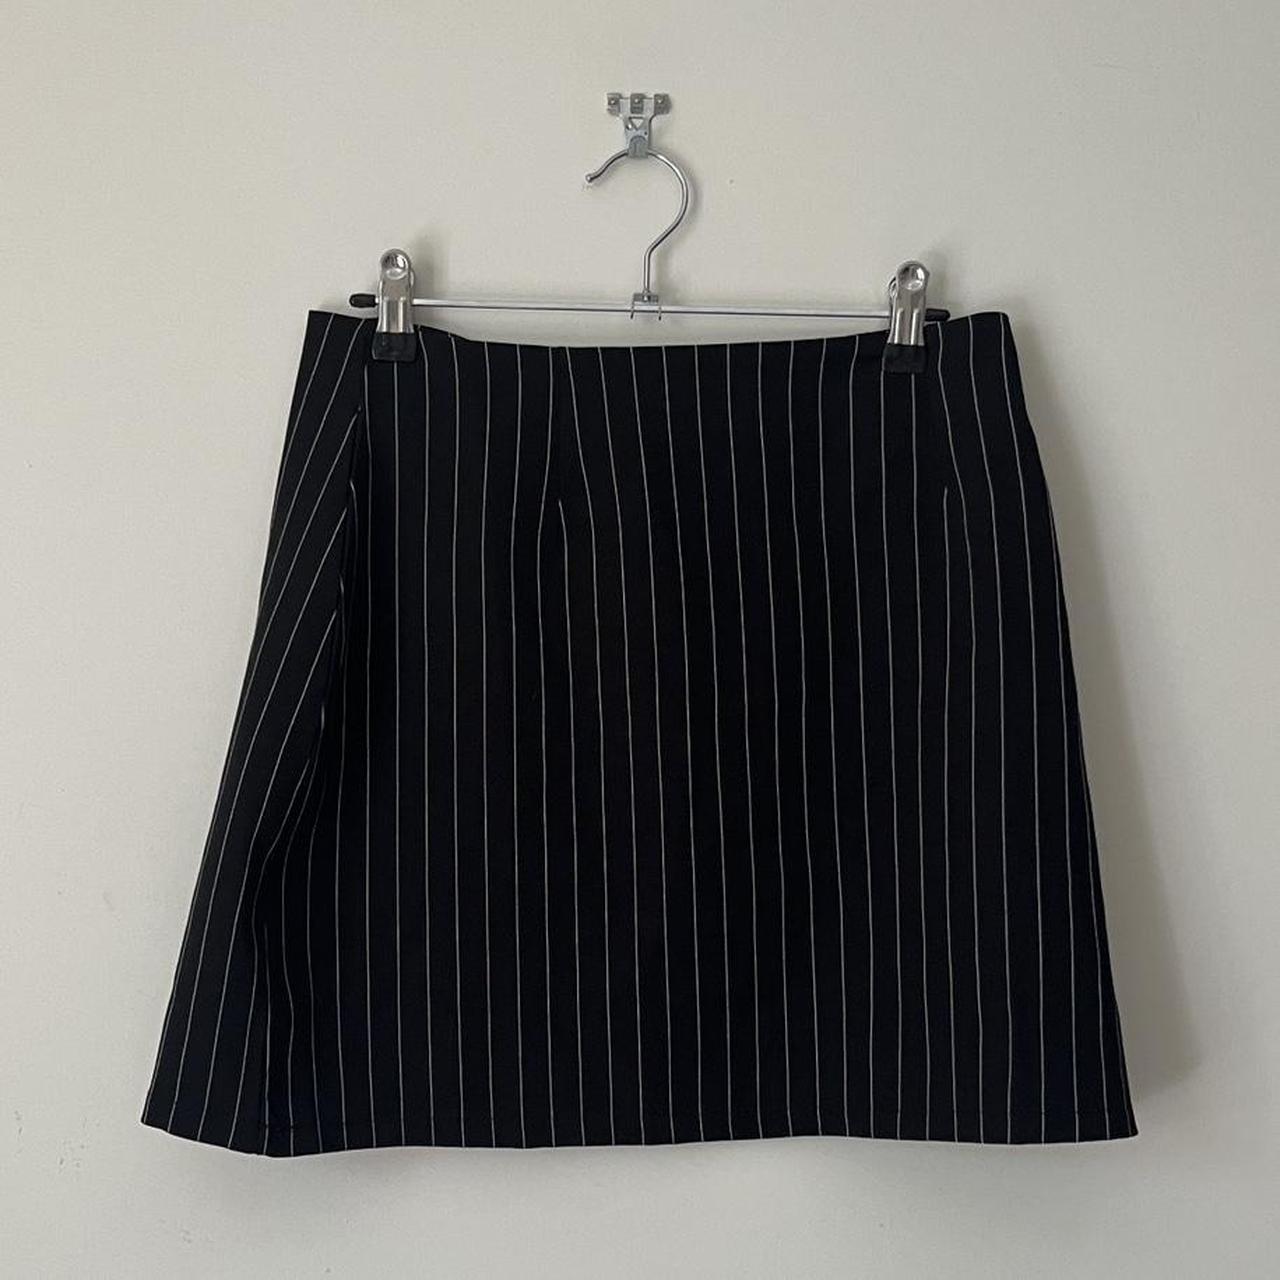 High waisted pinstripe miniskirt, fits a 8/10 Mint... - Depop